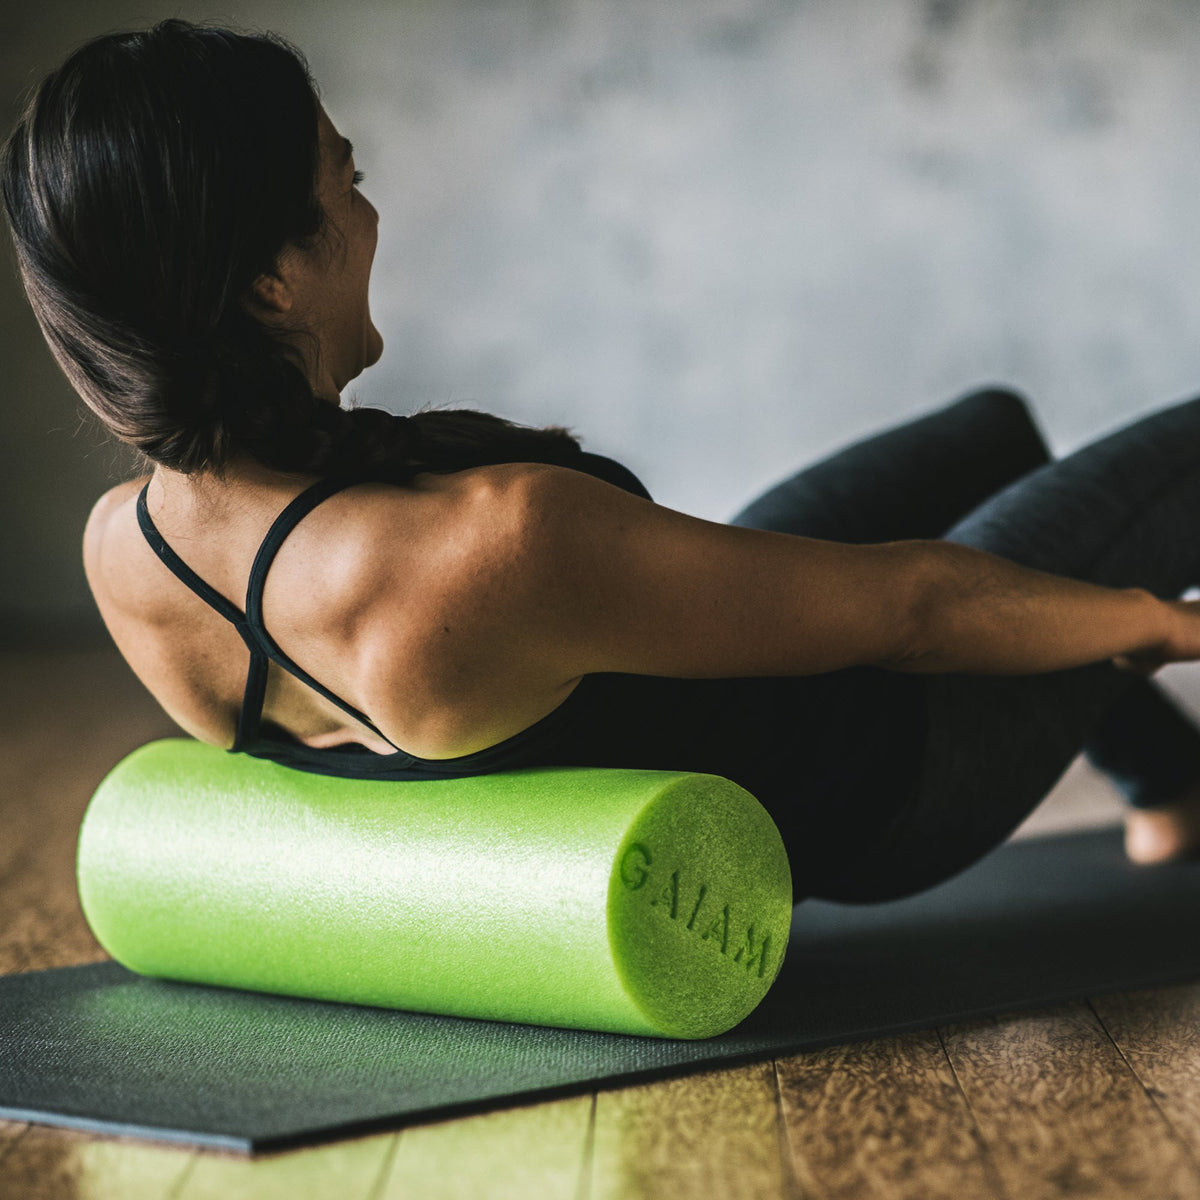  Gaiam Restore Multi-Grip Stretch Strap, Green : Yoga